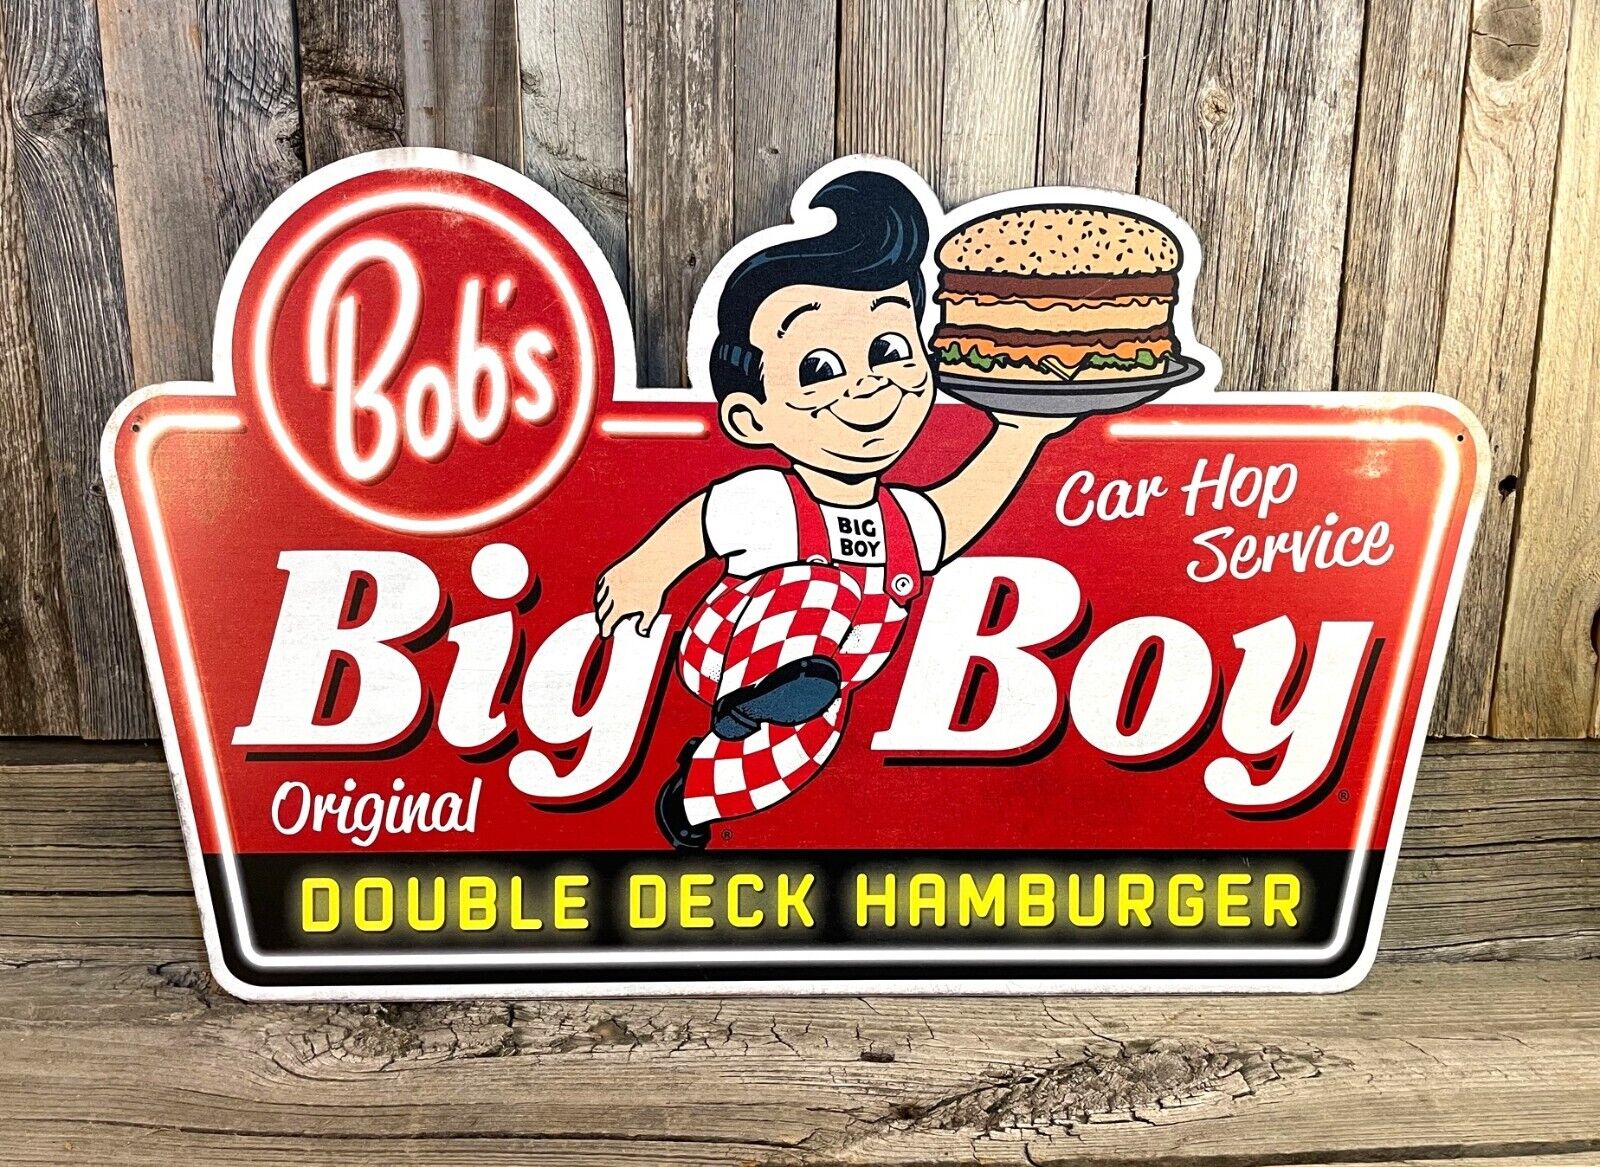 Big Boy Bob's Hamburger Car Hop Service Large 22